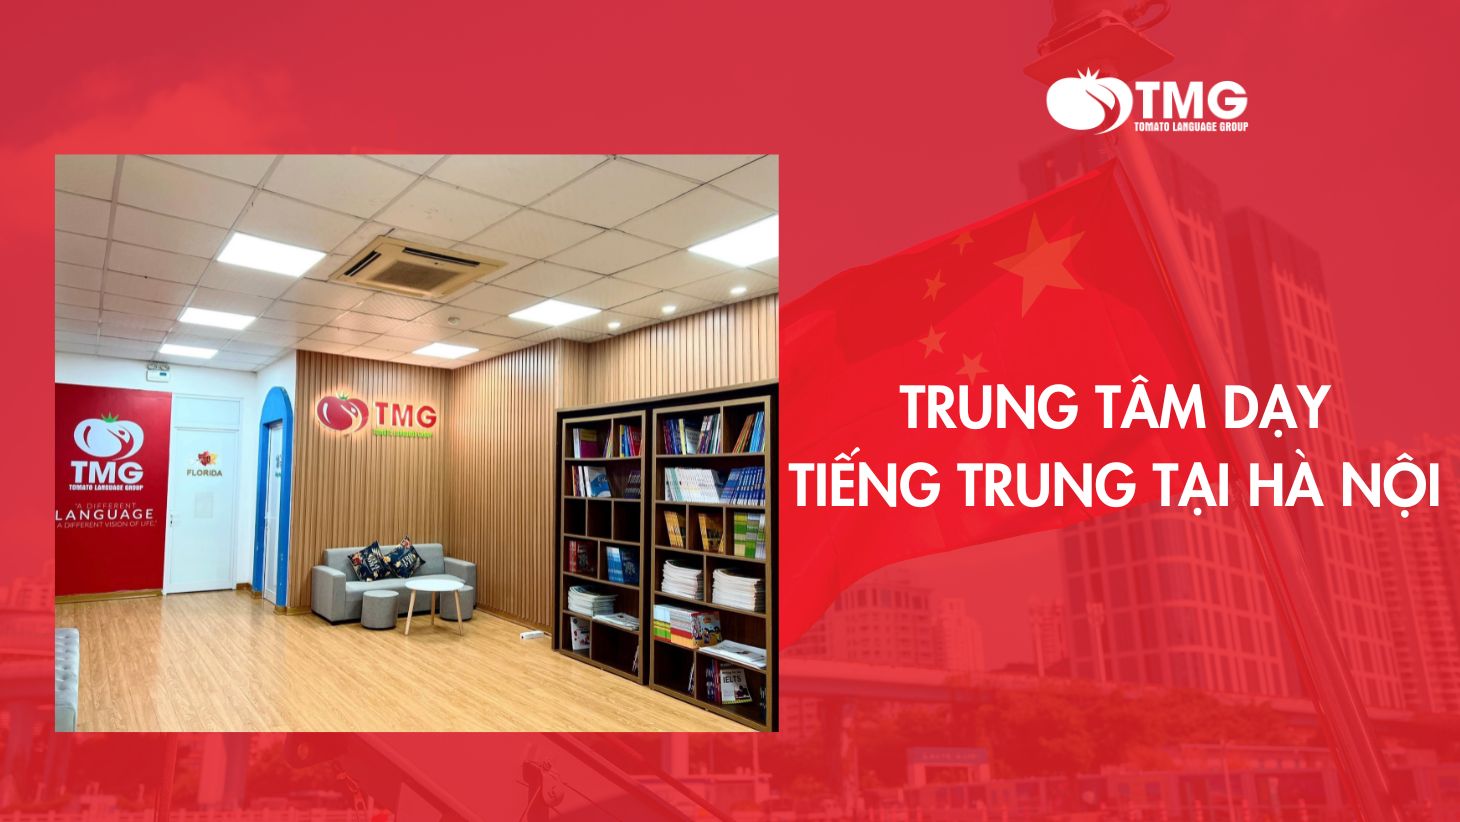 Trung tâm dạy tiếng Trung ở Hà Nội